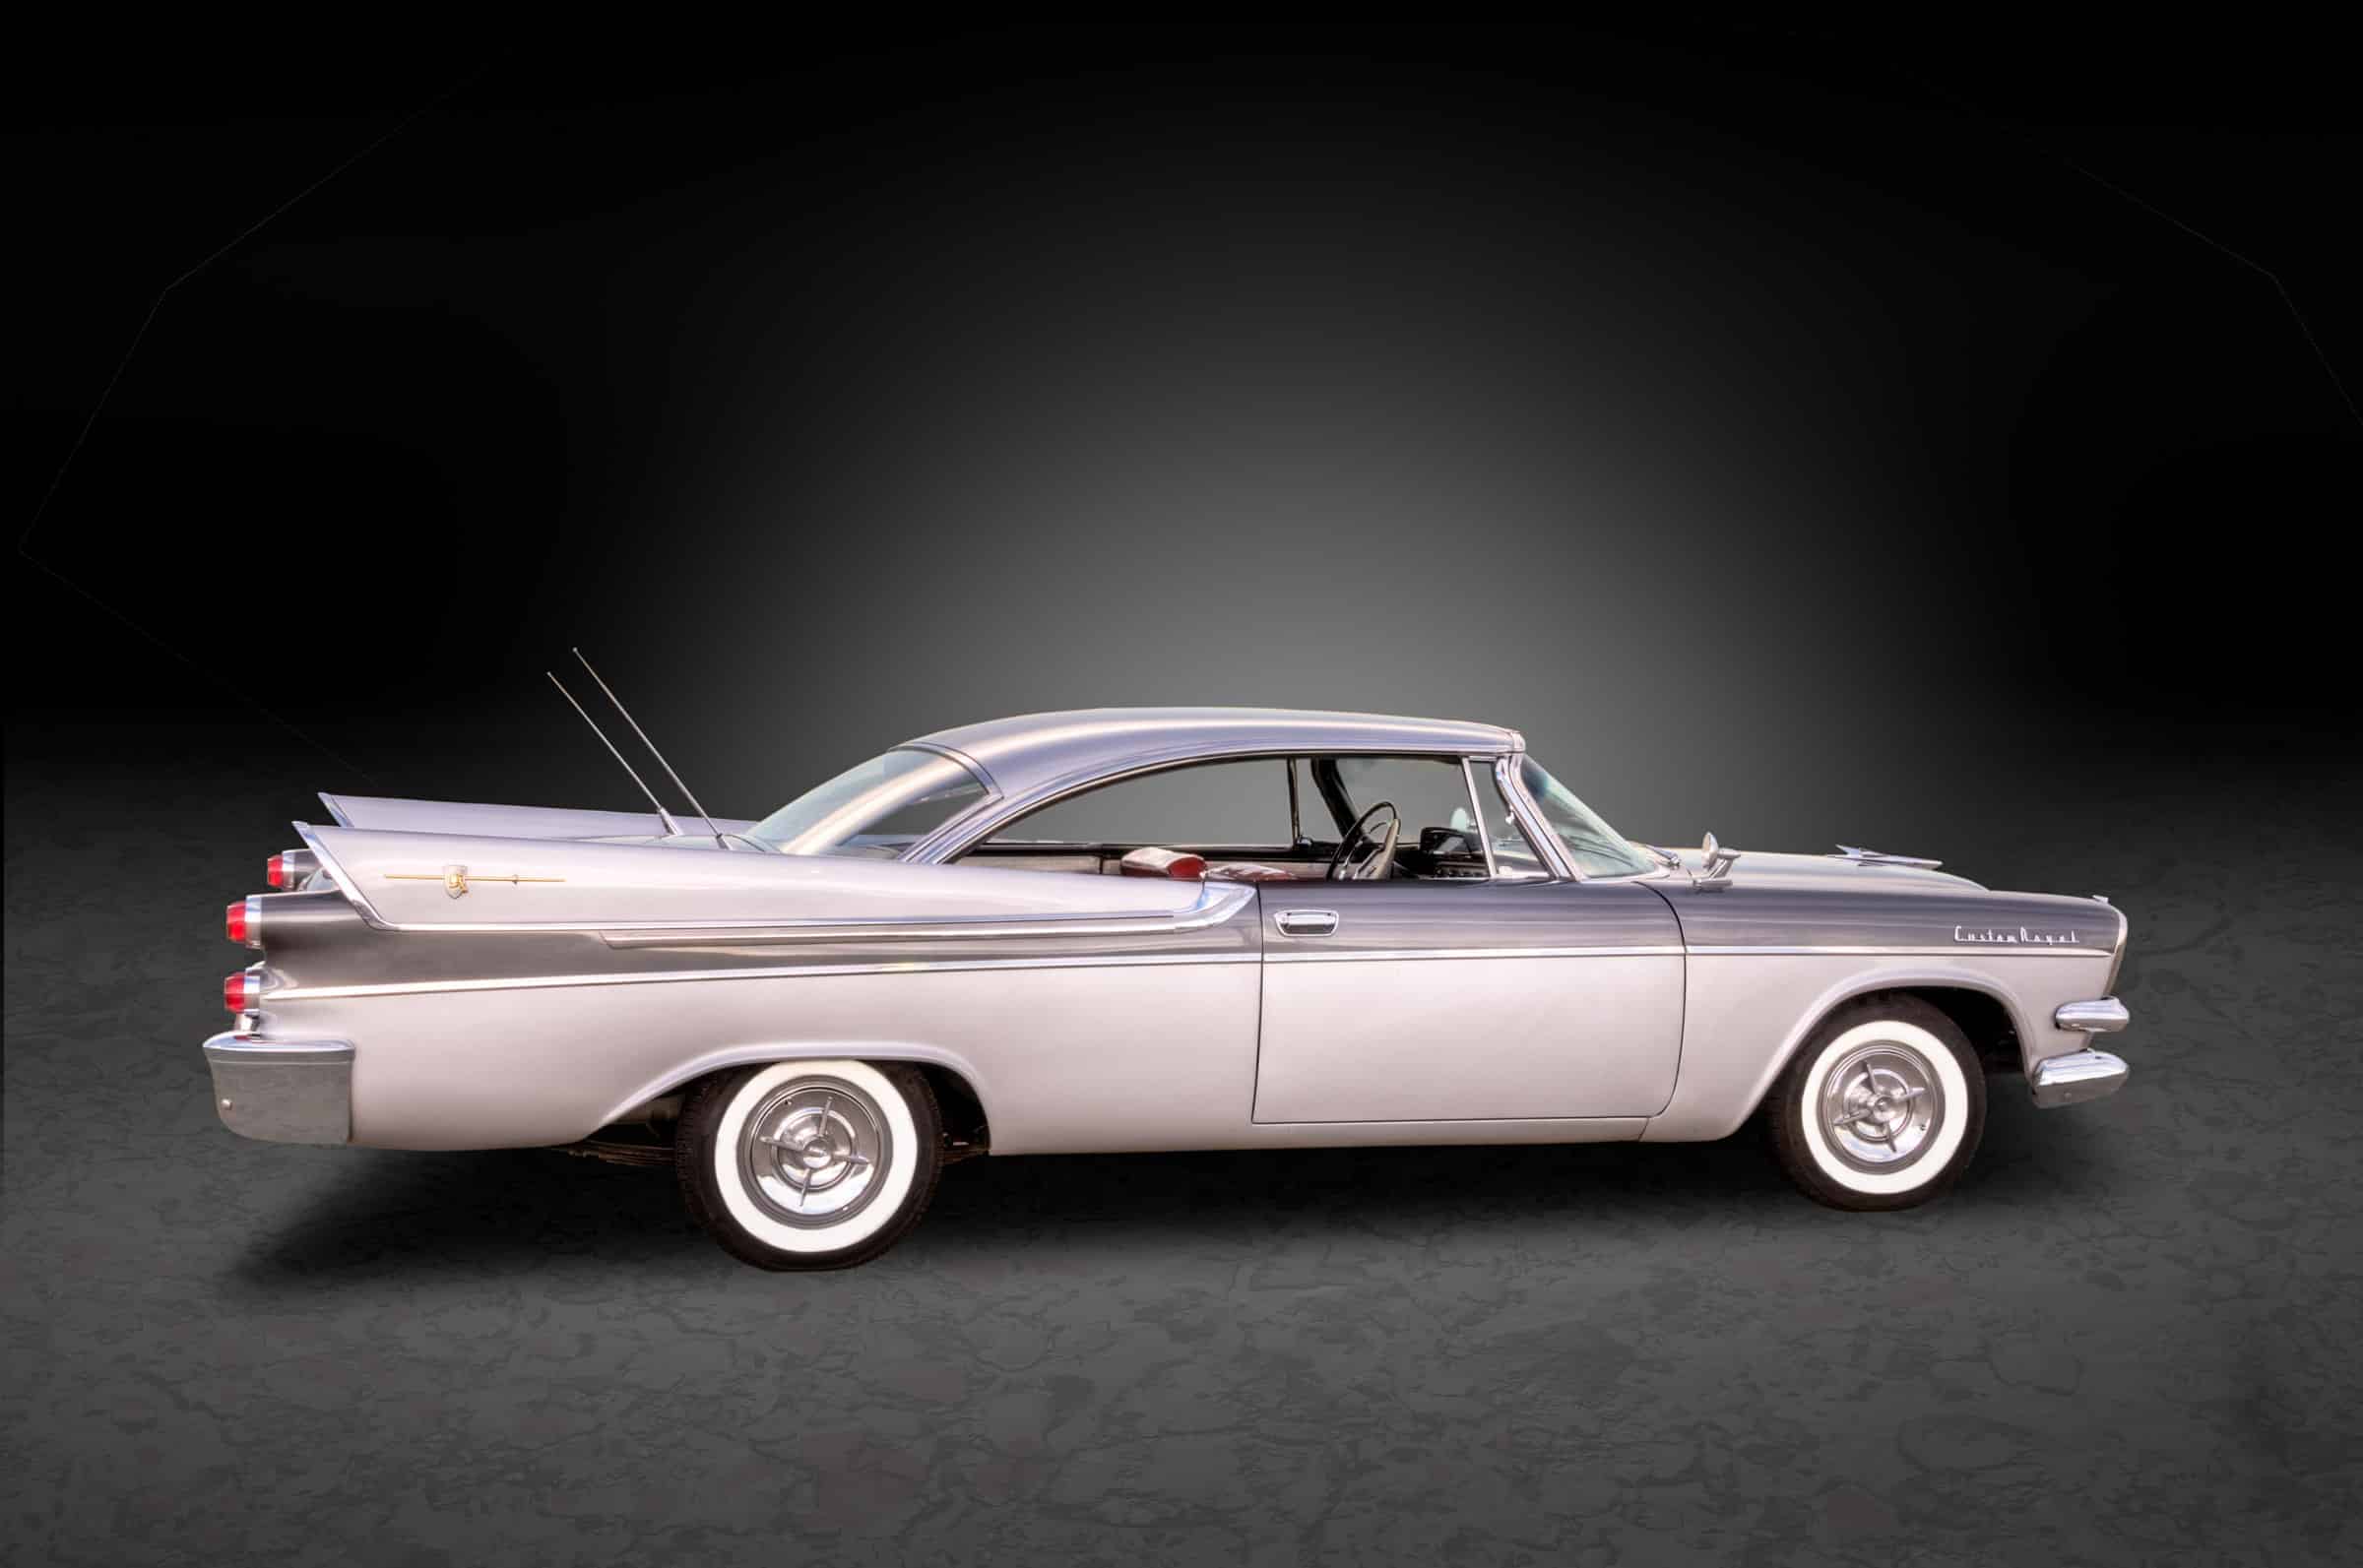 1957 Dodge Custom Royal in the studio, passenger side.